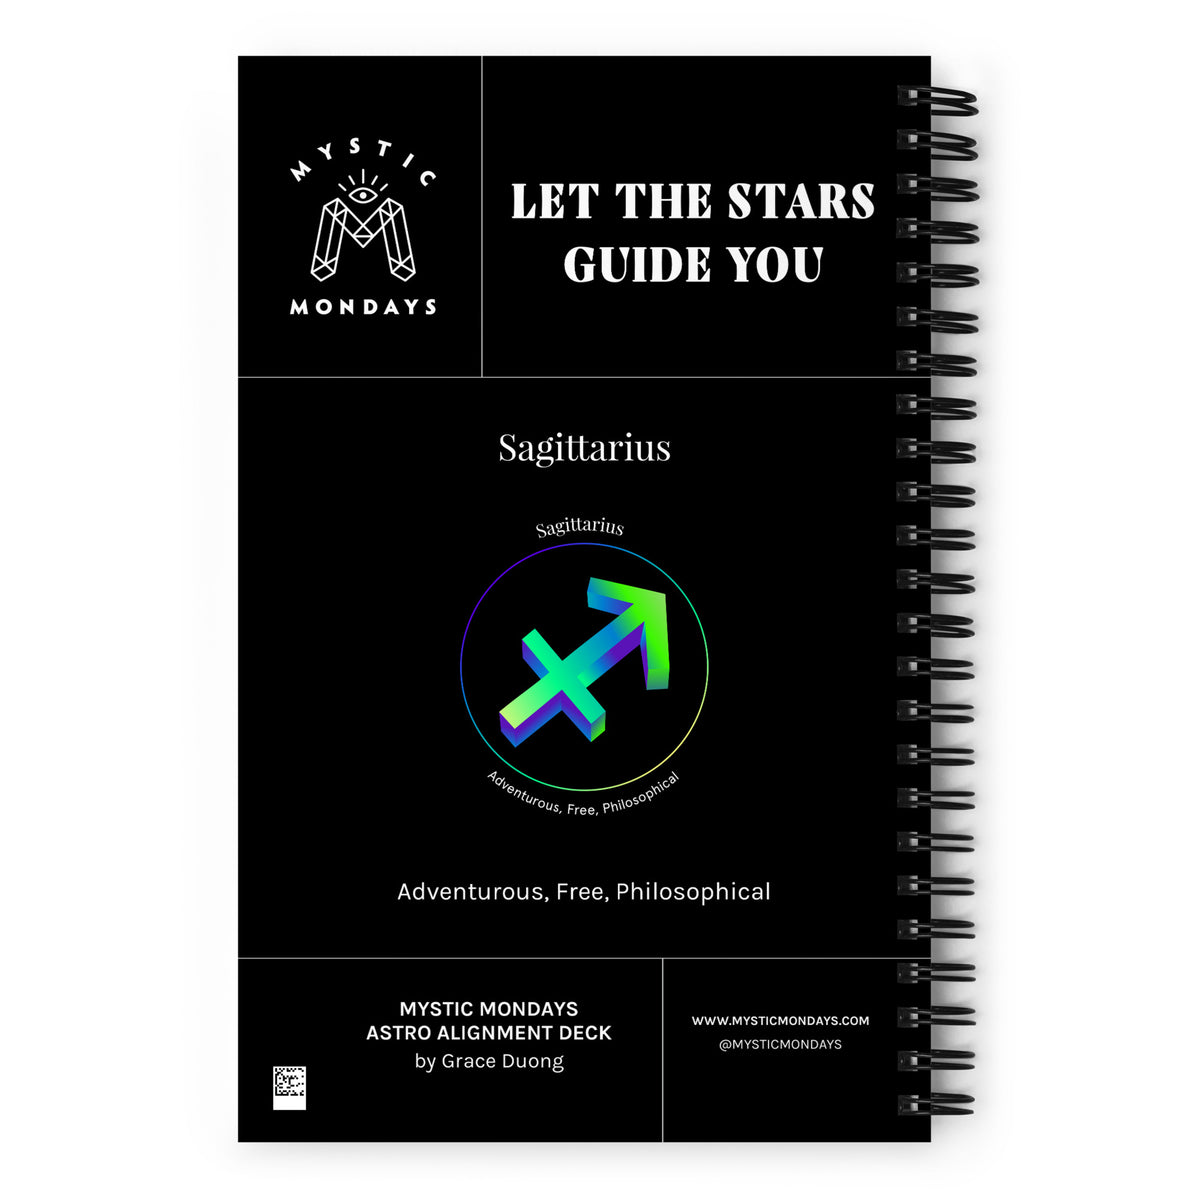 Sagittarius Journal